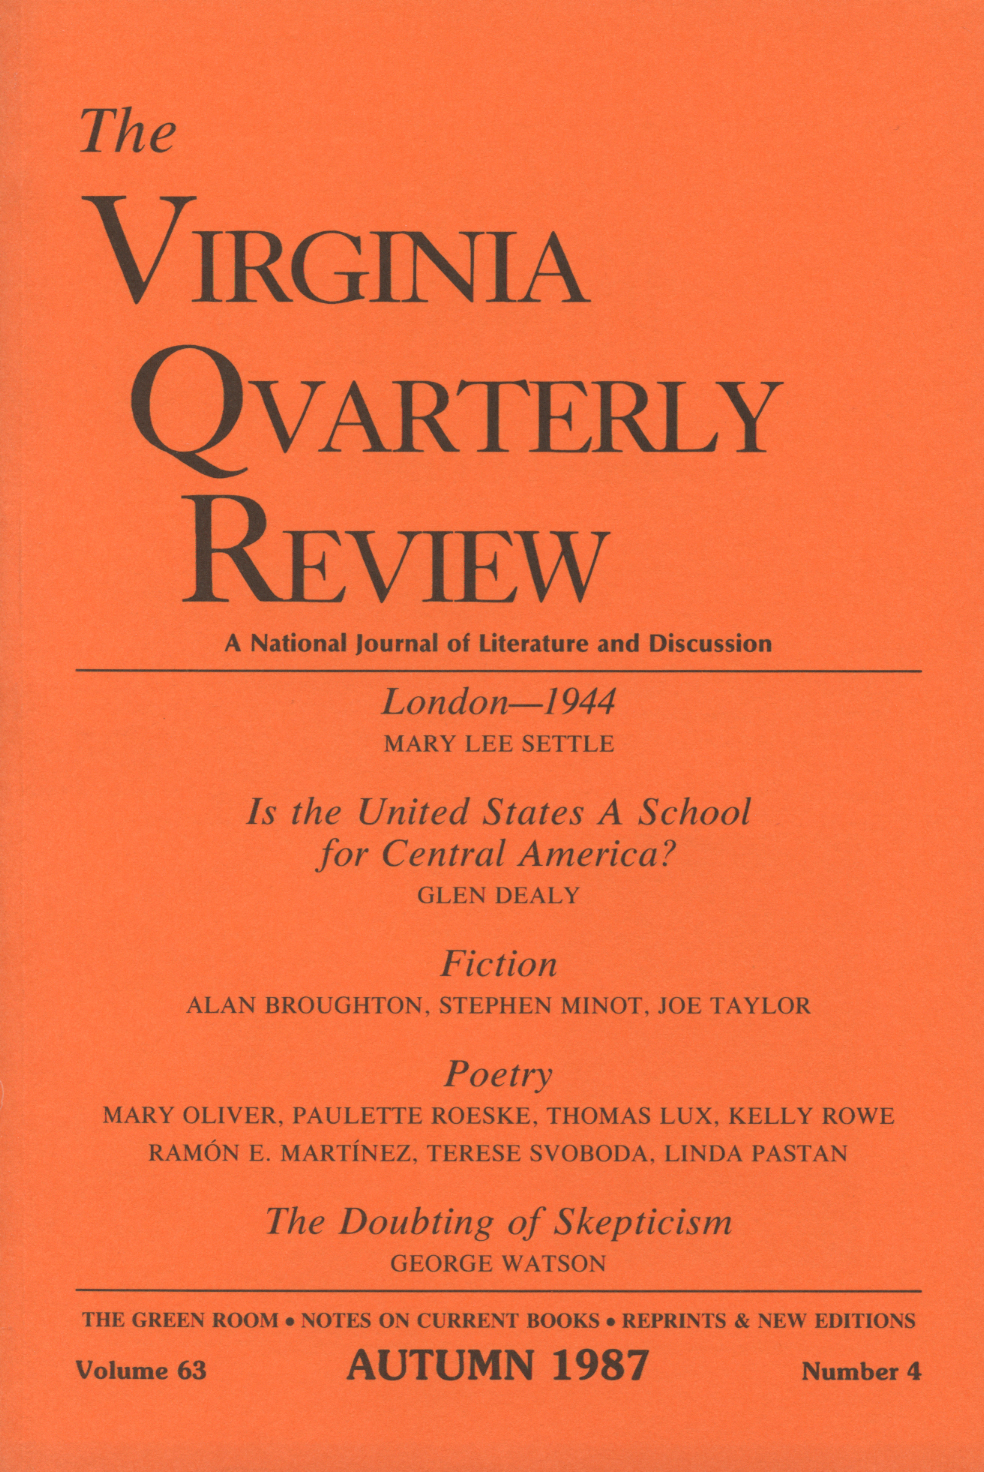 Virginia Quarterly Review, Autumn 1987 cover